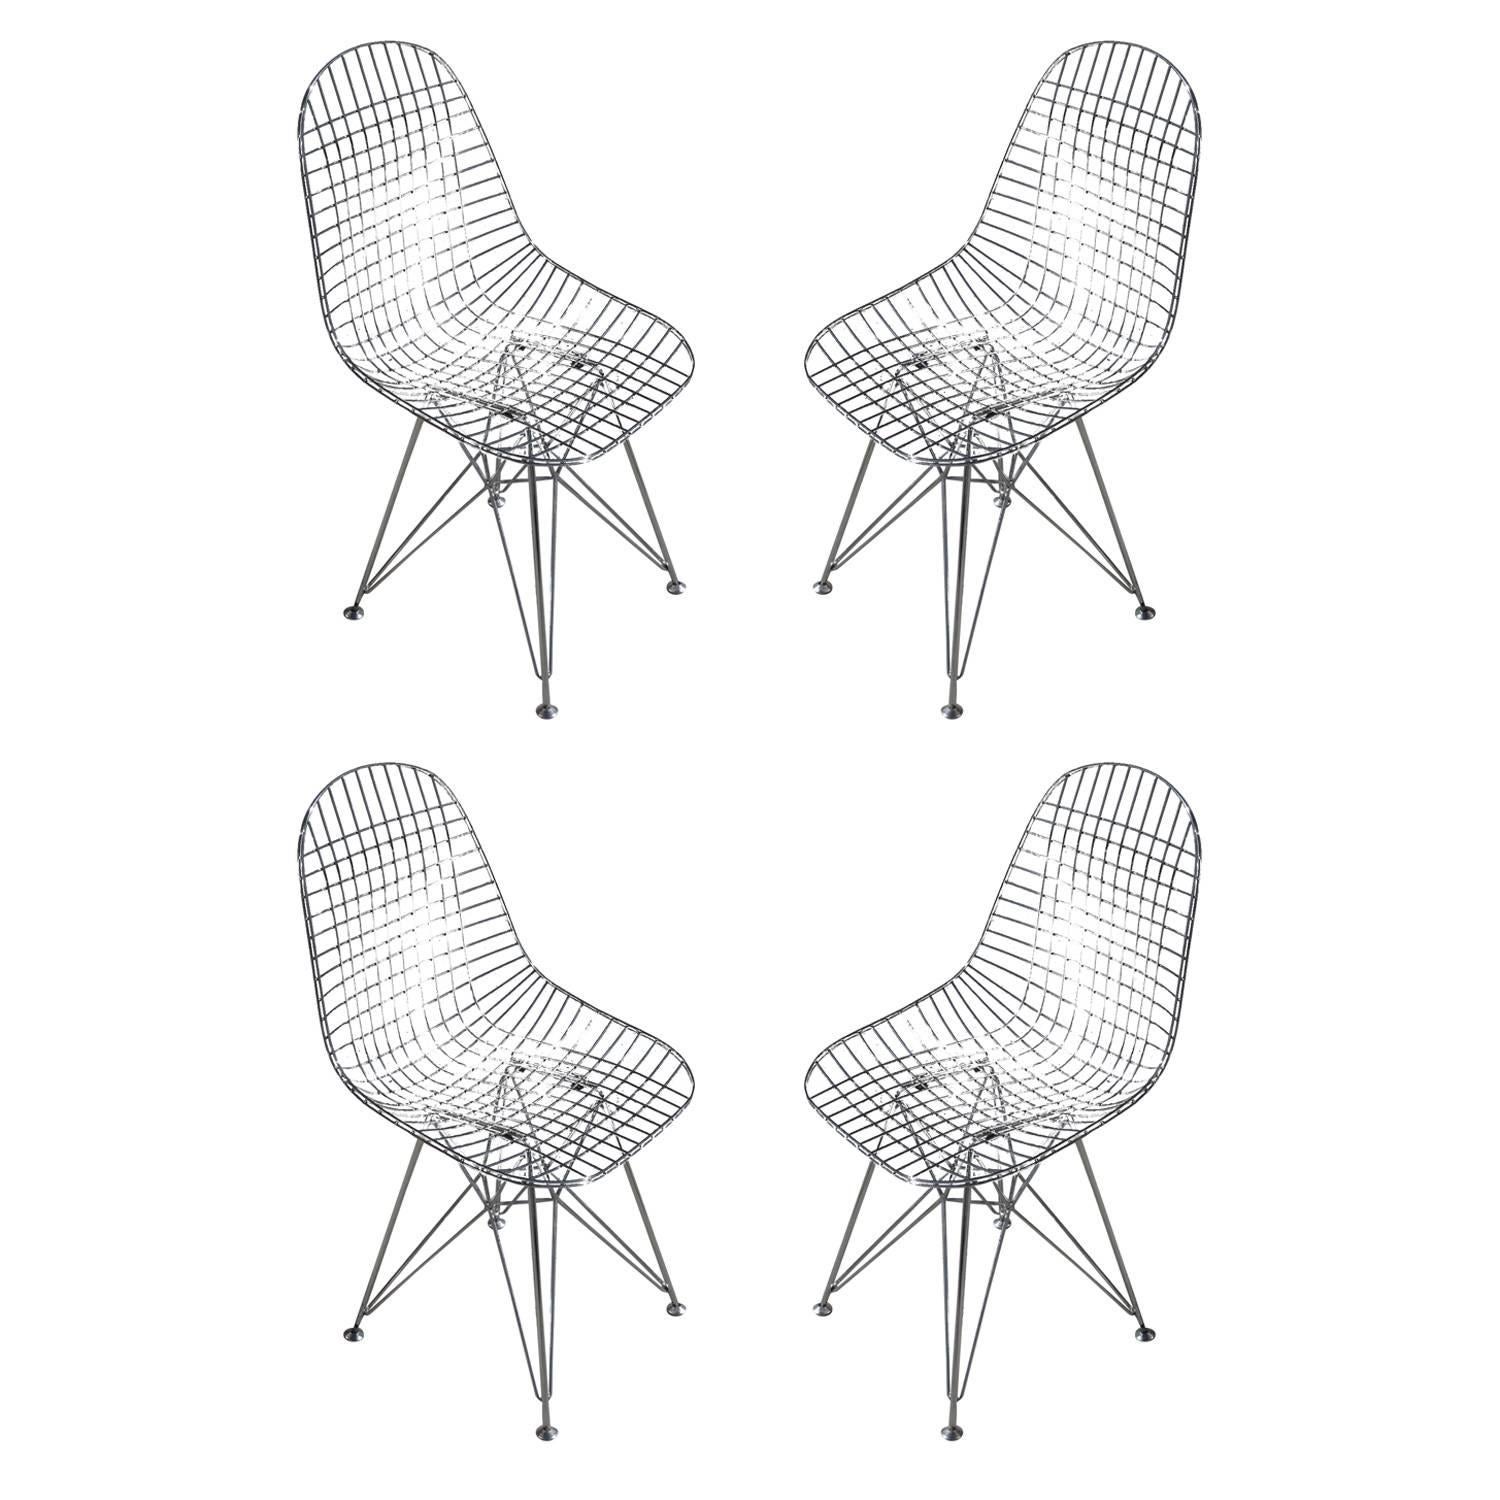 Ensemble de six chaises.

Les expériences de Charles et Ray Eames avec des fils soudés ont abouti à la conception du DKR en 1951. DKR.0 signifie hauteur de salle à manger, coque en fil de fer, base en tige, sans pad d'assise. La forme organique et